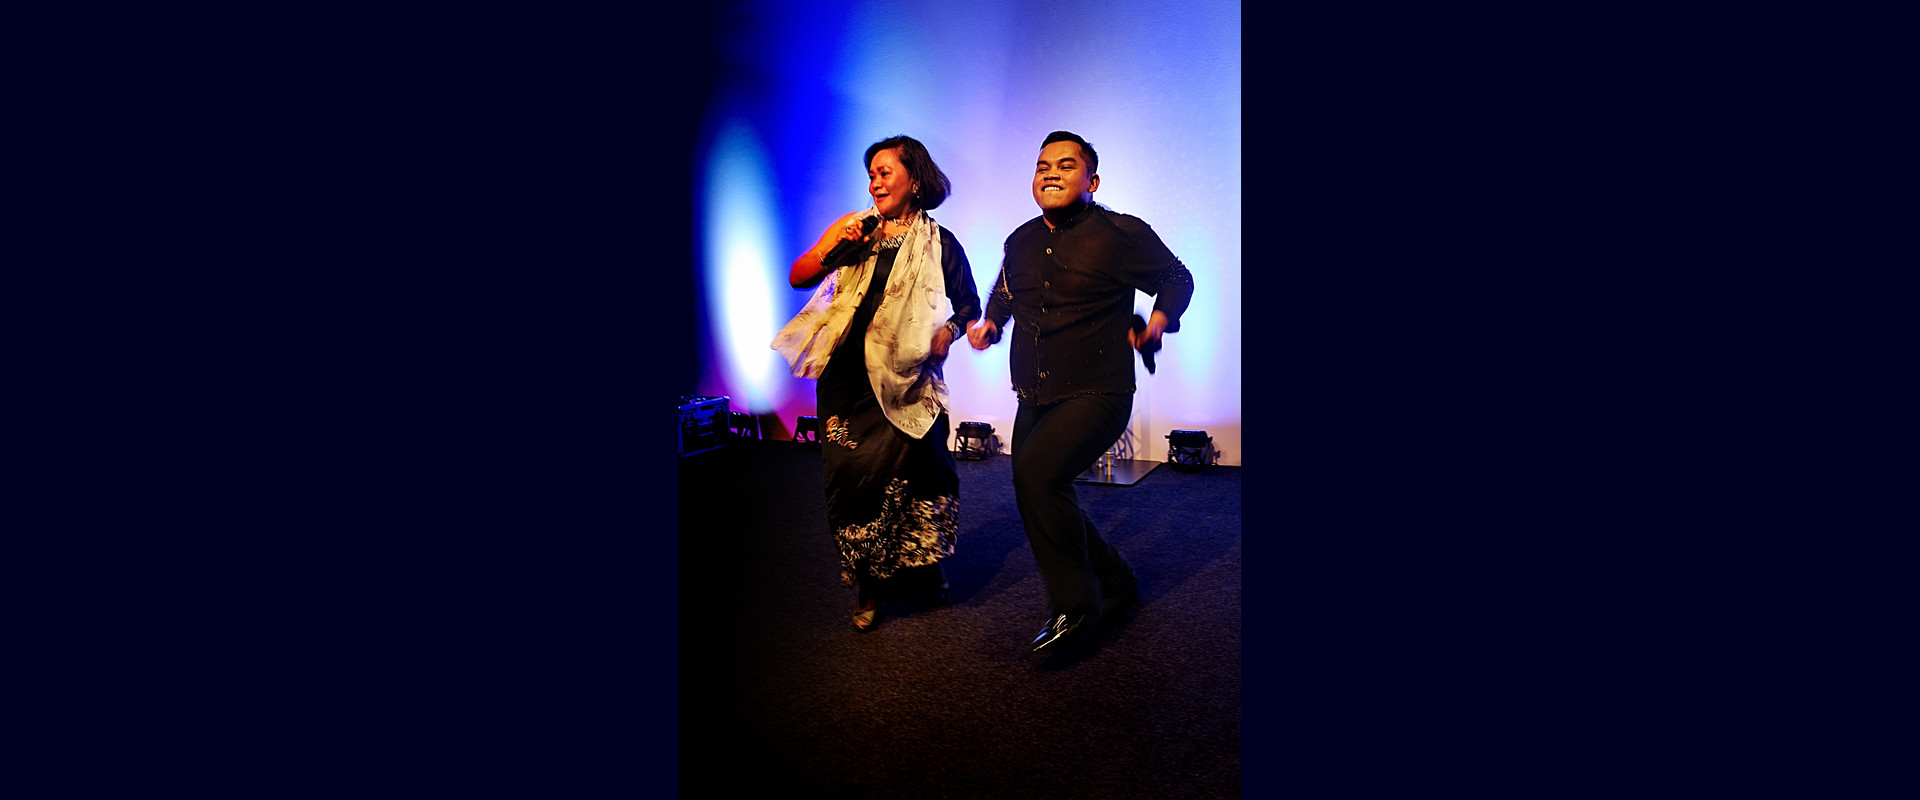 Jeffri Ramli at the Malaysian Gala Night 2018 by Jeroen Neleman